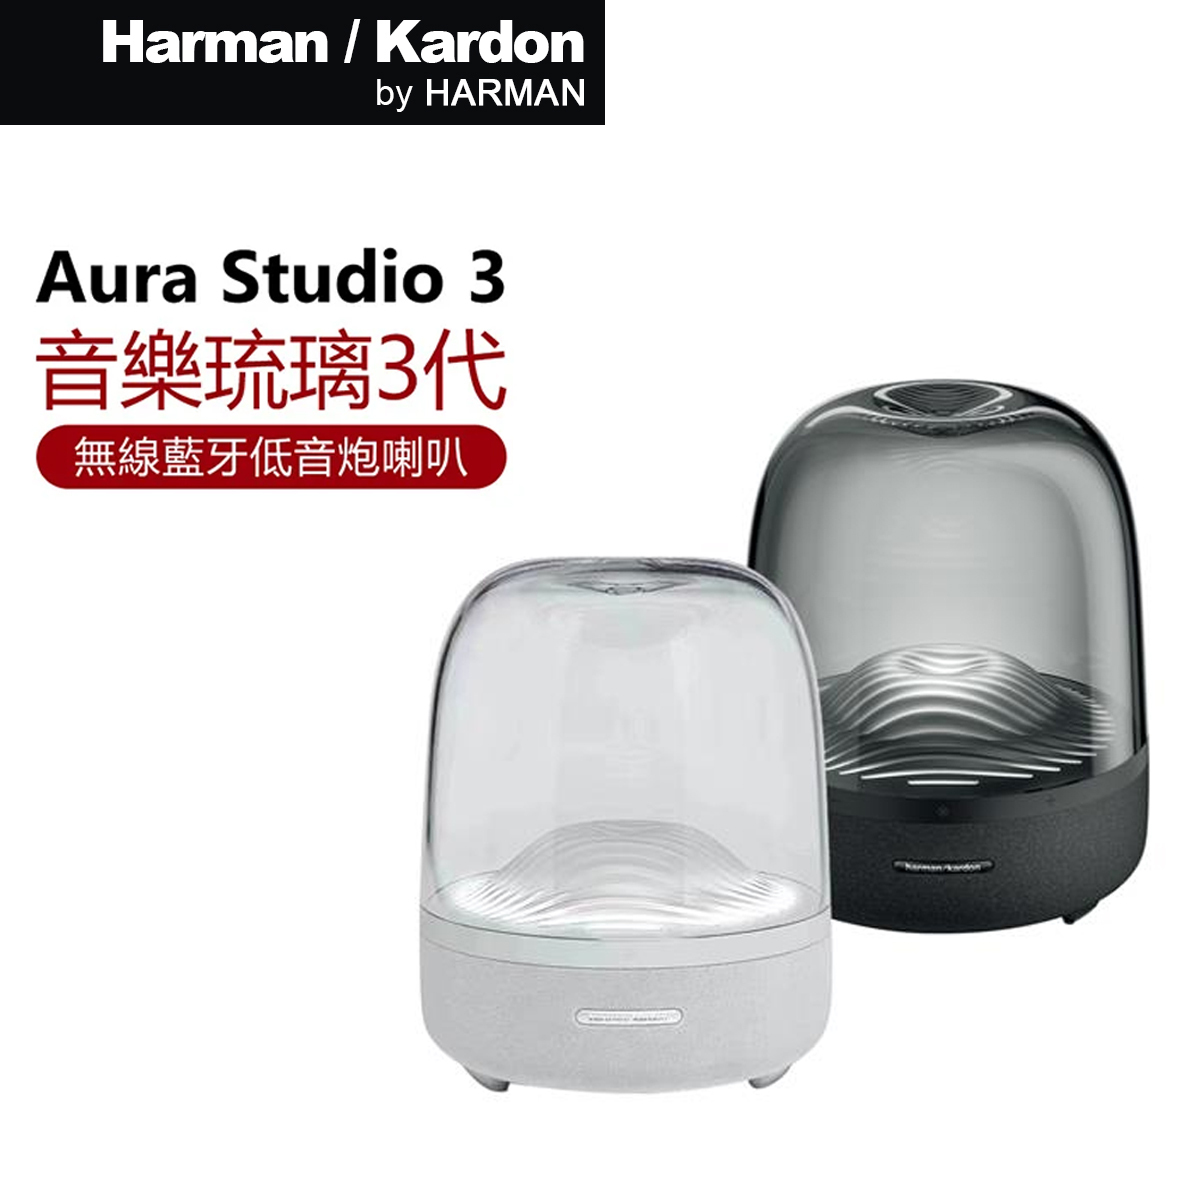 Harman Kardon Aura Studio 3 3代琉璃無線藍牙喇叭音箱